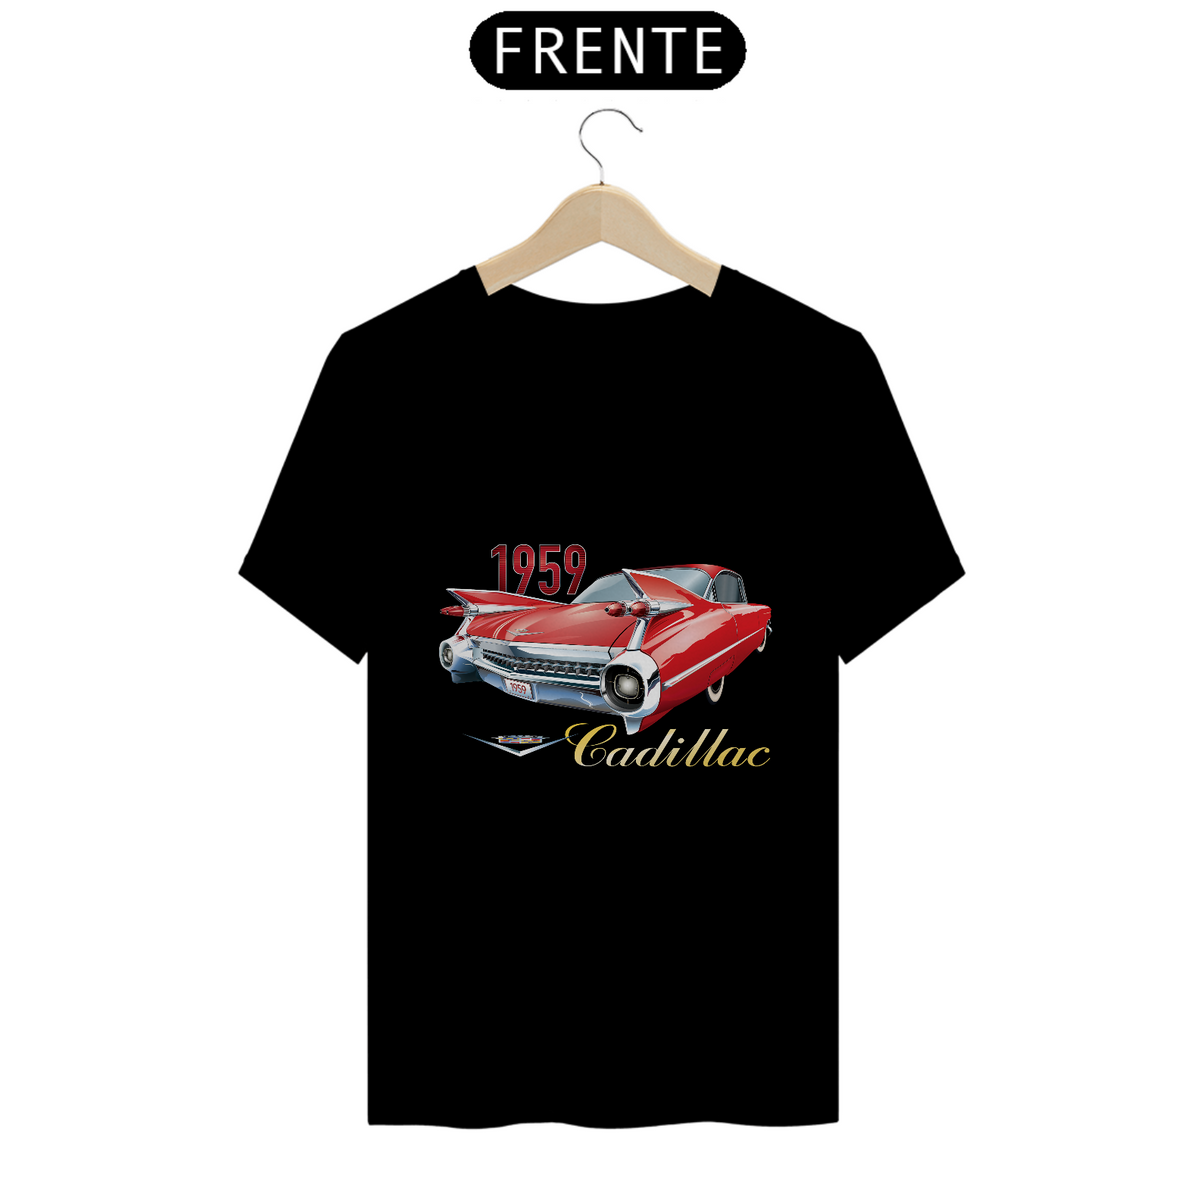 Nome do produto: Cadillac